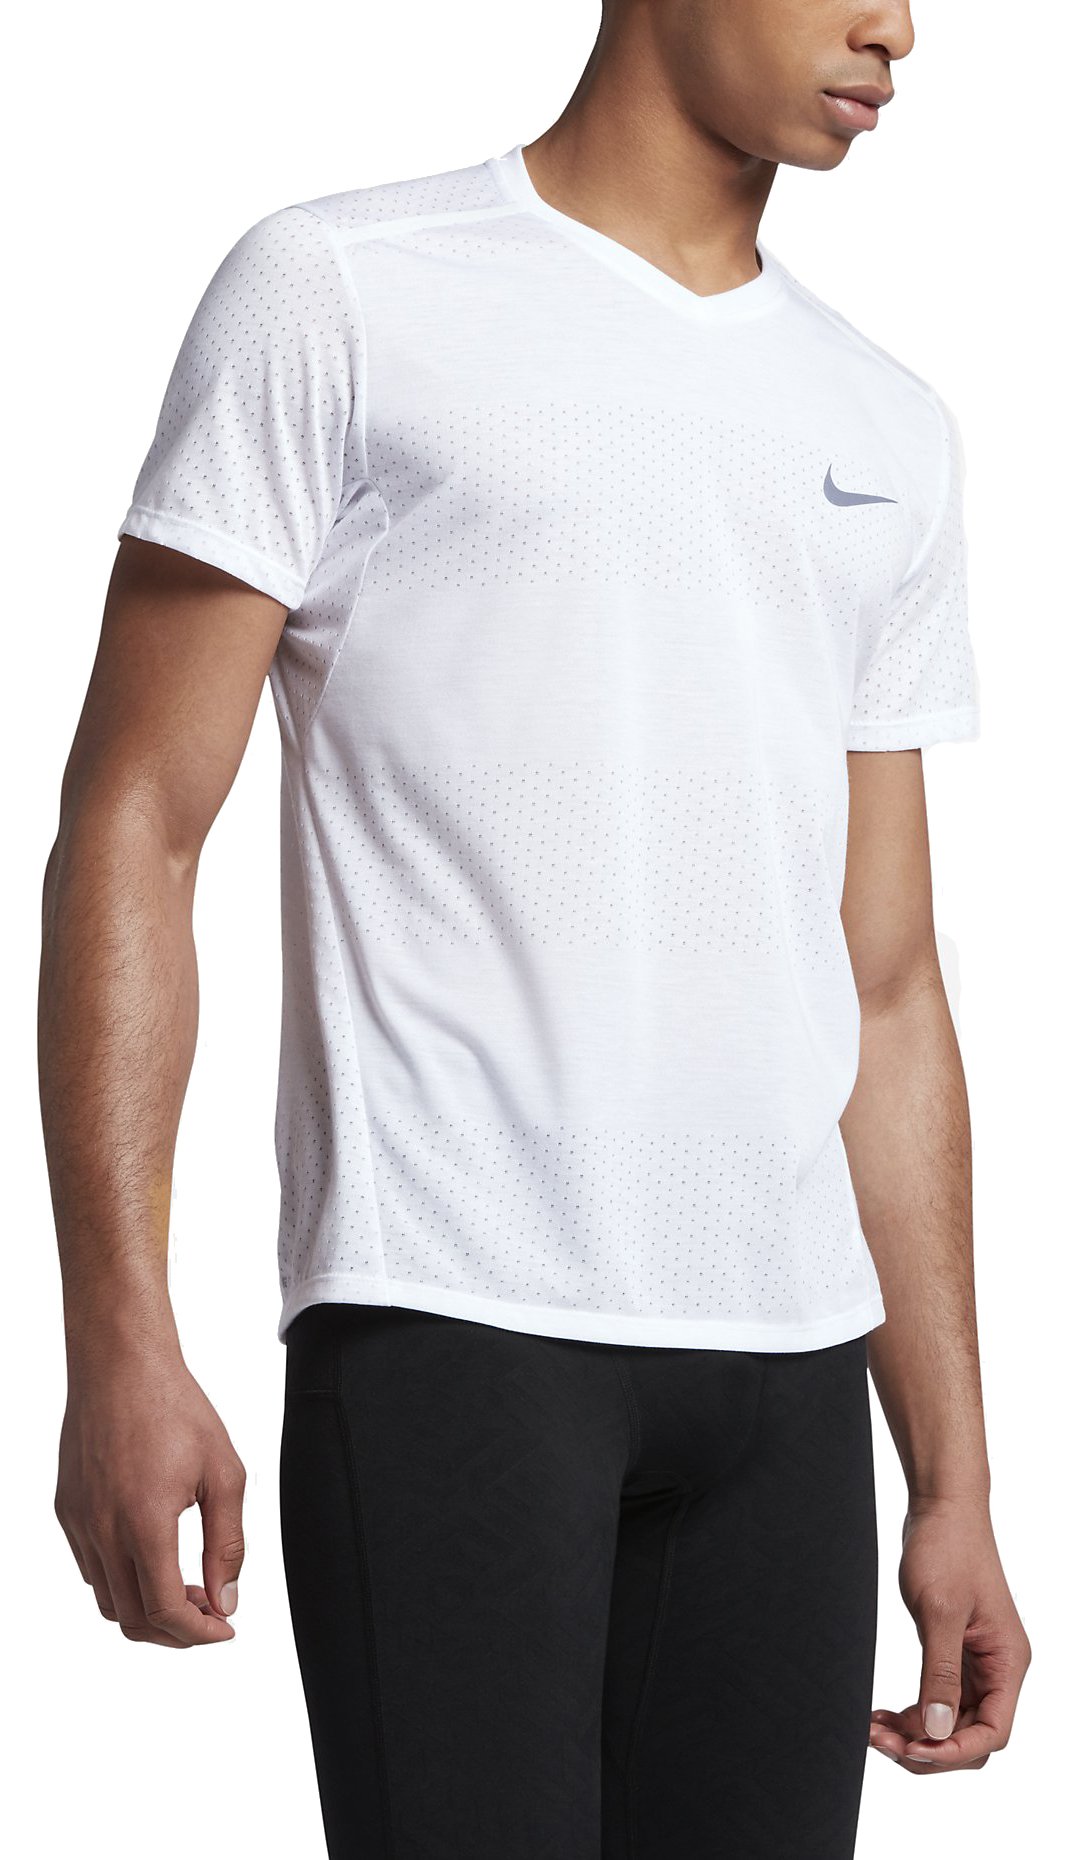 Pánské běžecké triko s krátkým rukávem Nike Breathe Tailwind